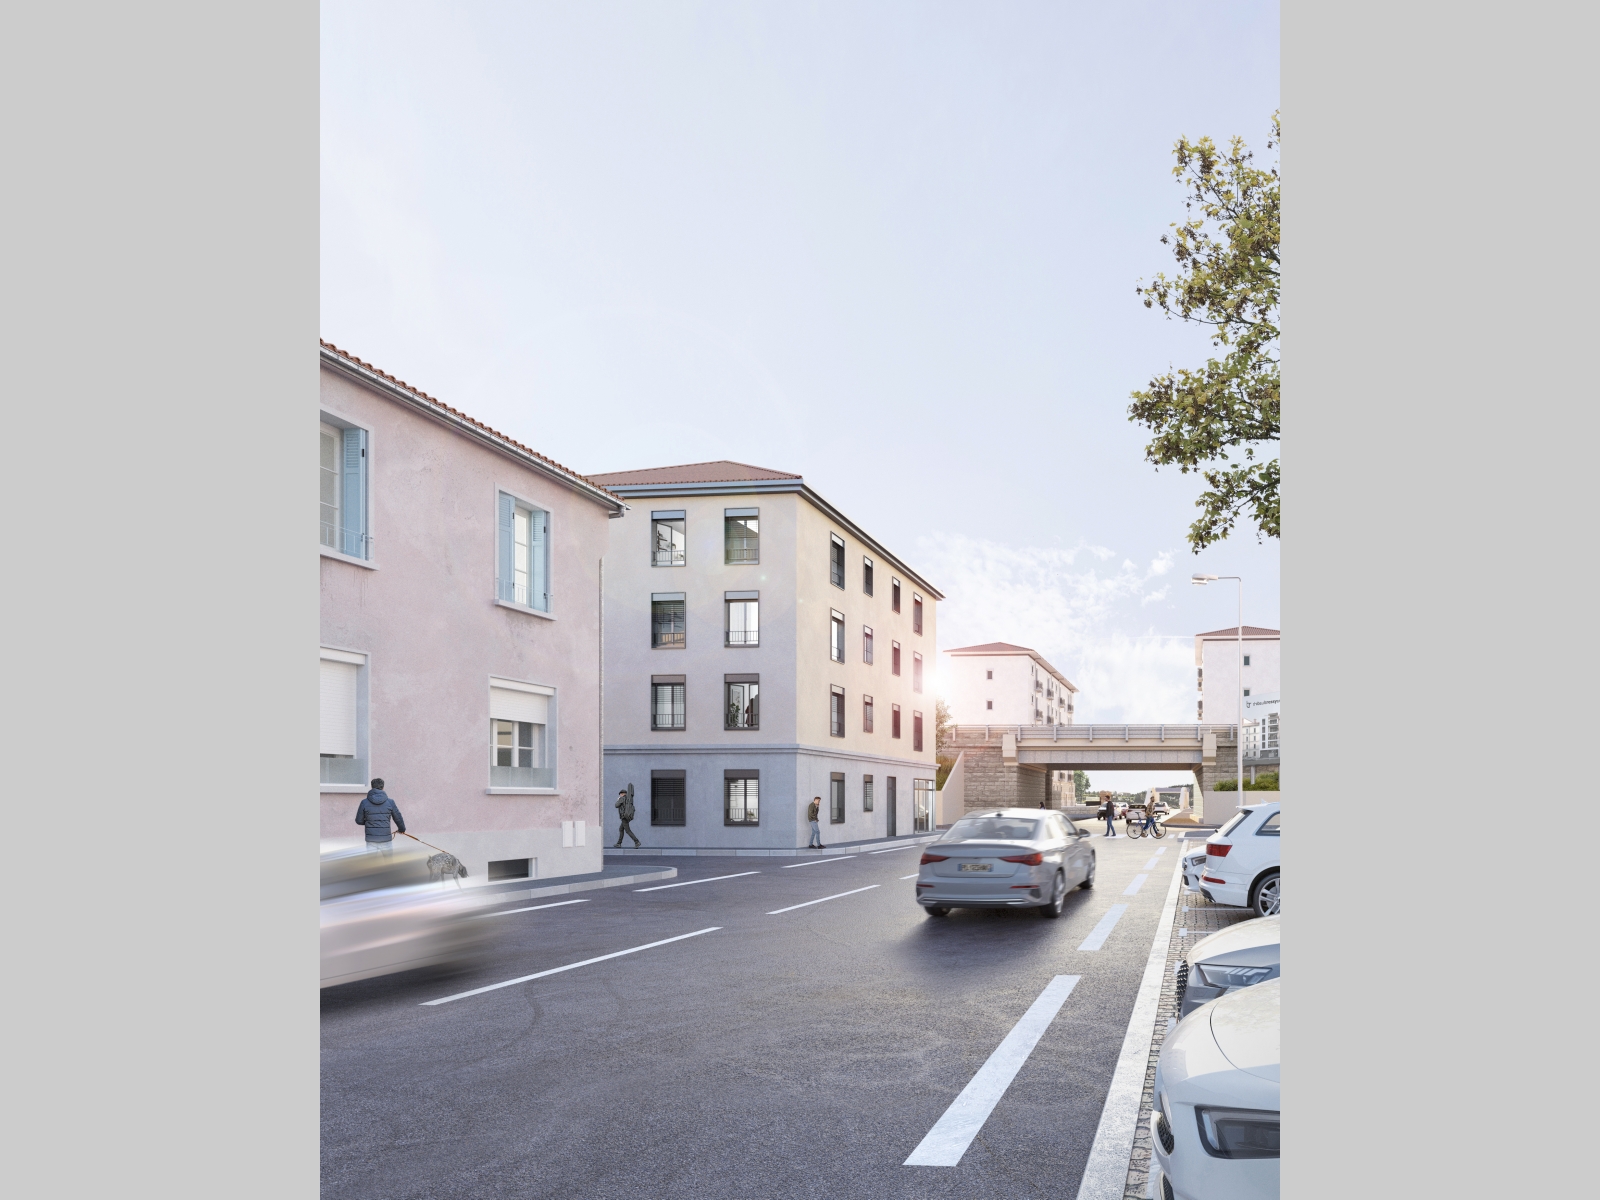 Trouver residence etudiante Lyon 8 Location meublée non-professionnelle (LMNP) livrable 2023 quartier Le grand trou 